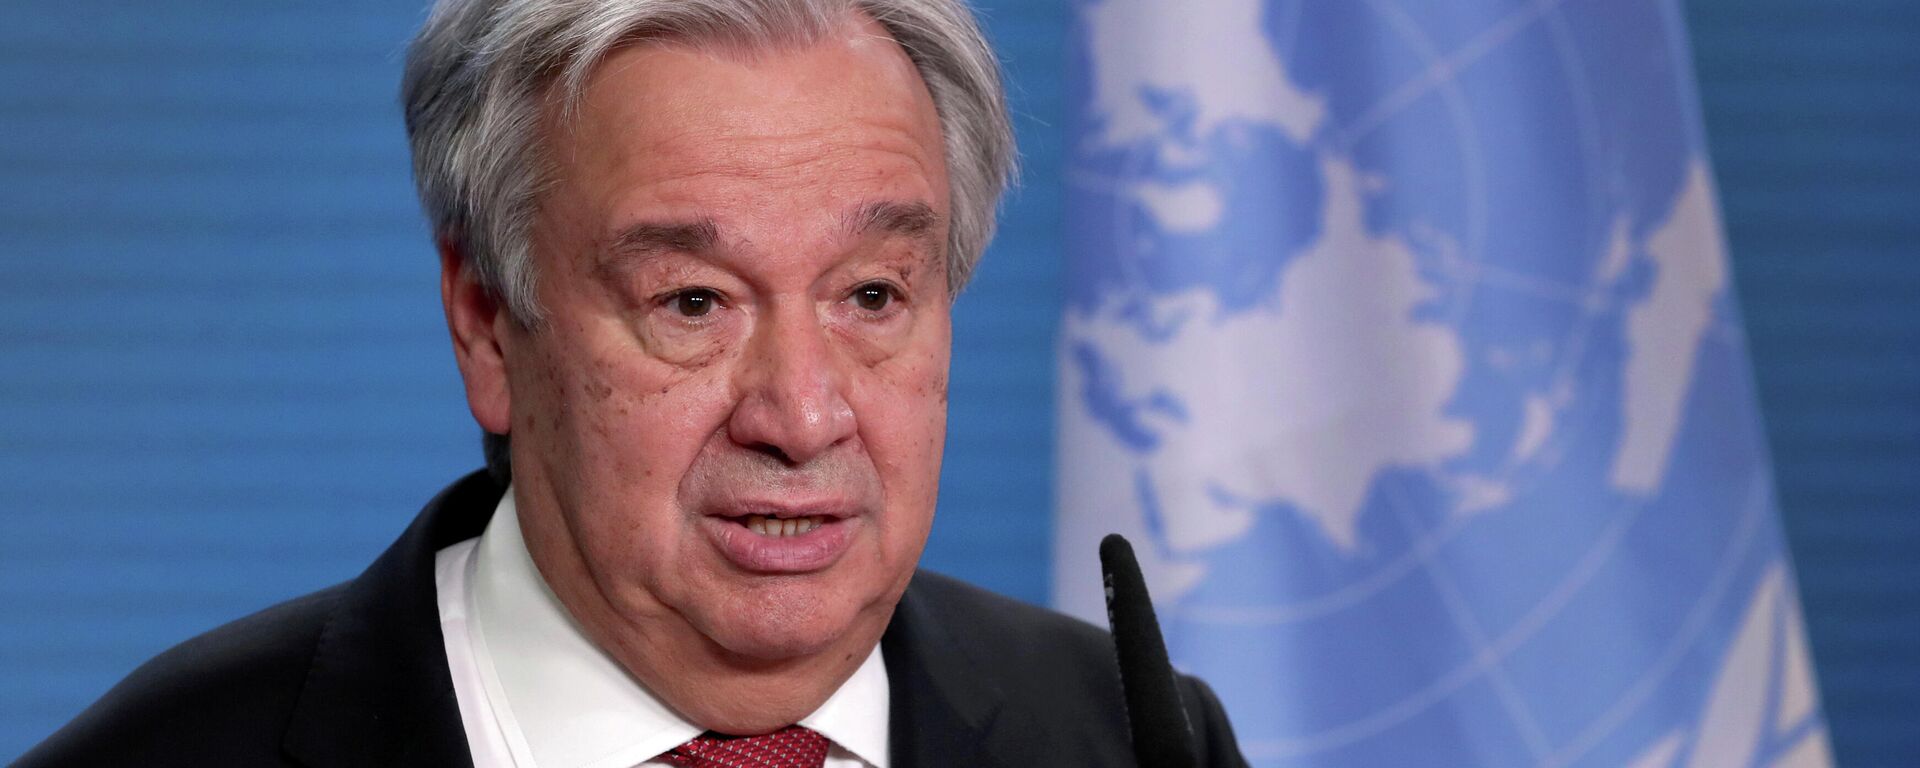 António Guterres, el secretario general de la Organización de Naciones Unidas (ONU) - Sputnik Mundo, 1920, 19.04.2021